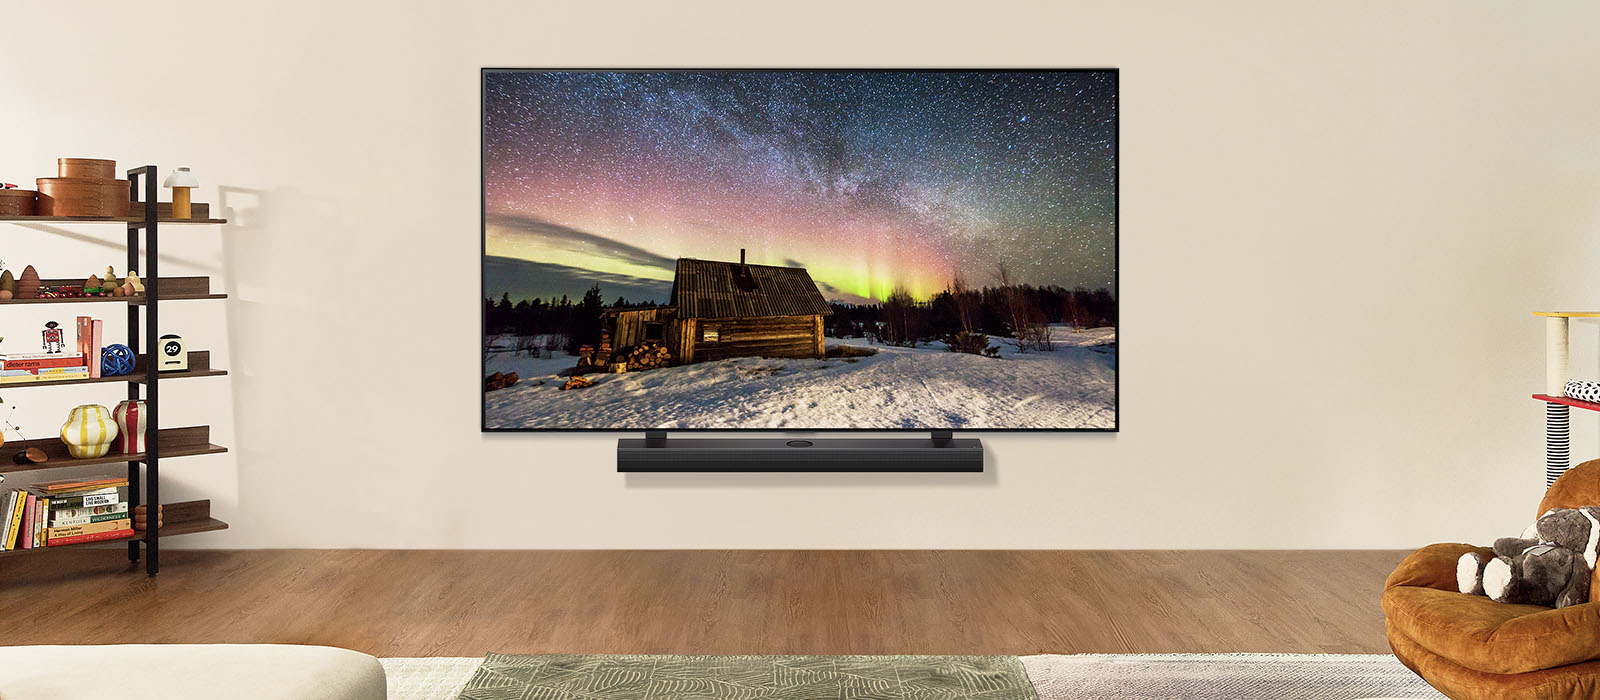 TV LG et barre de son LG dans un espace de vie moderne pendant la journée. L’image à l’écran des aurores boréales s’affiche avec des niveaux de luminosité idéaux.